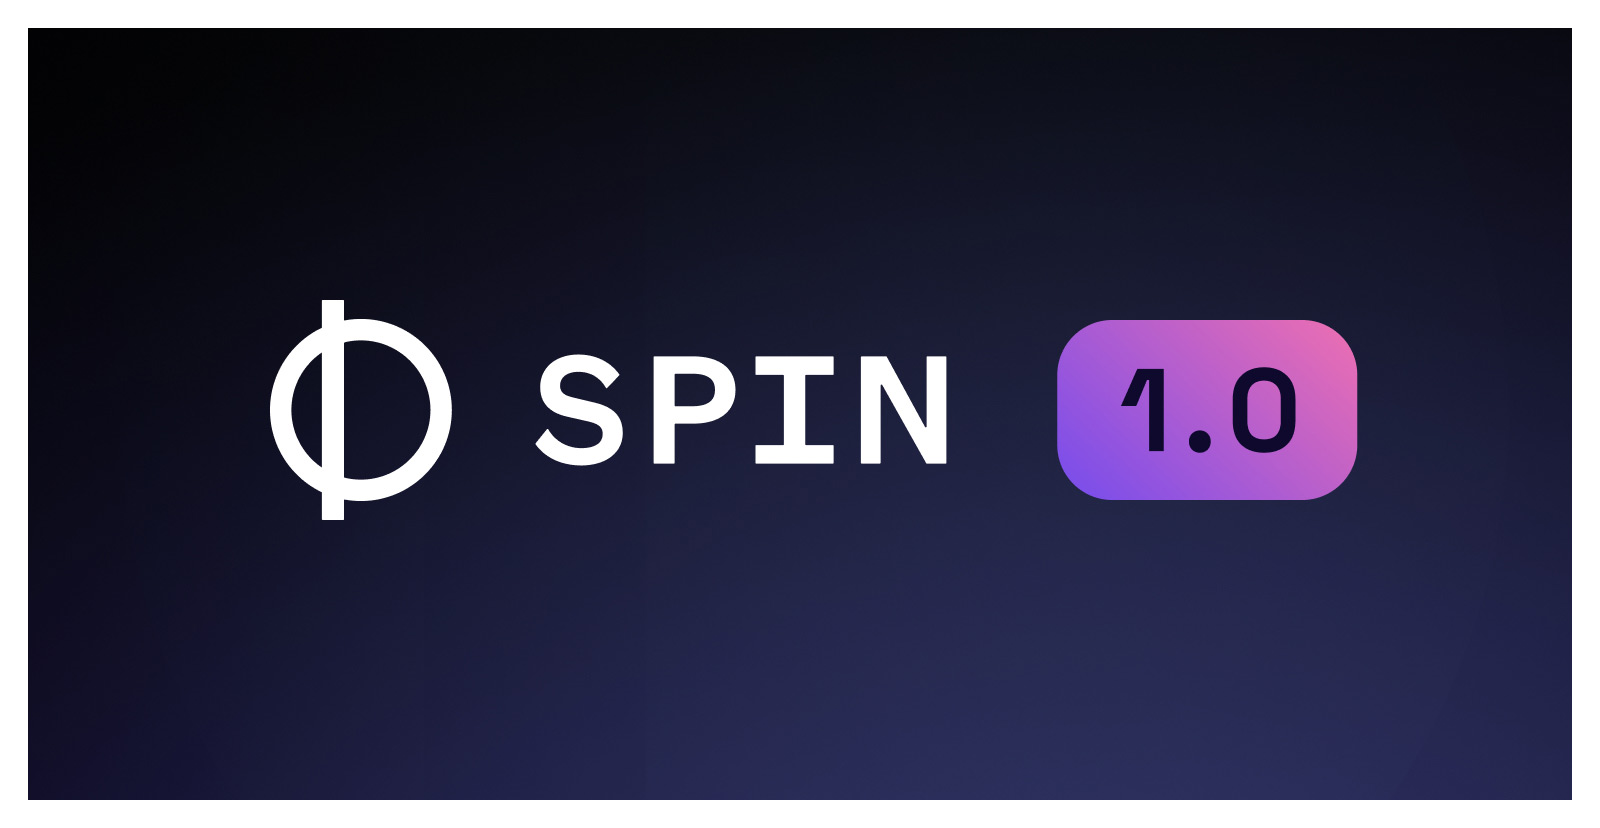 Spin 1.0 — The Developer Tool for Serverless WebAssembly